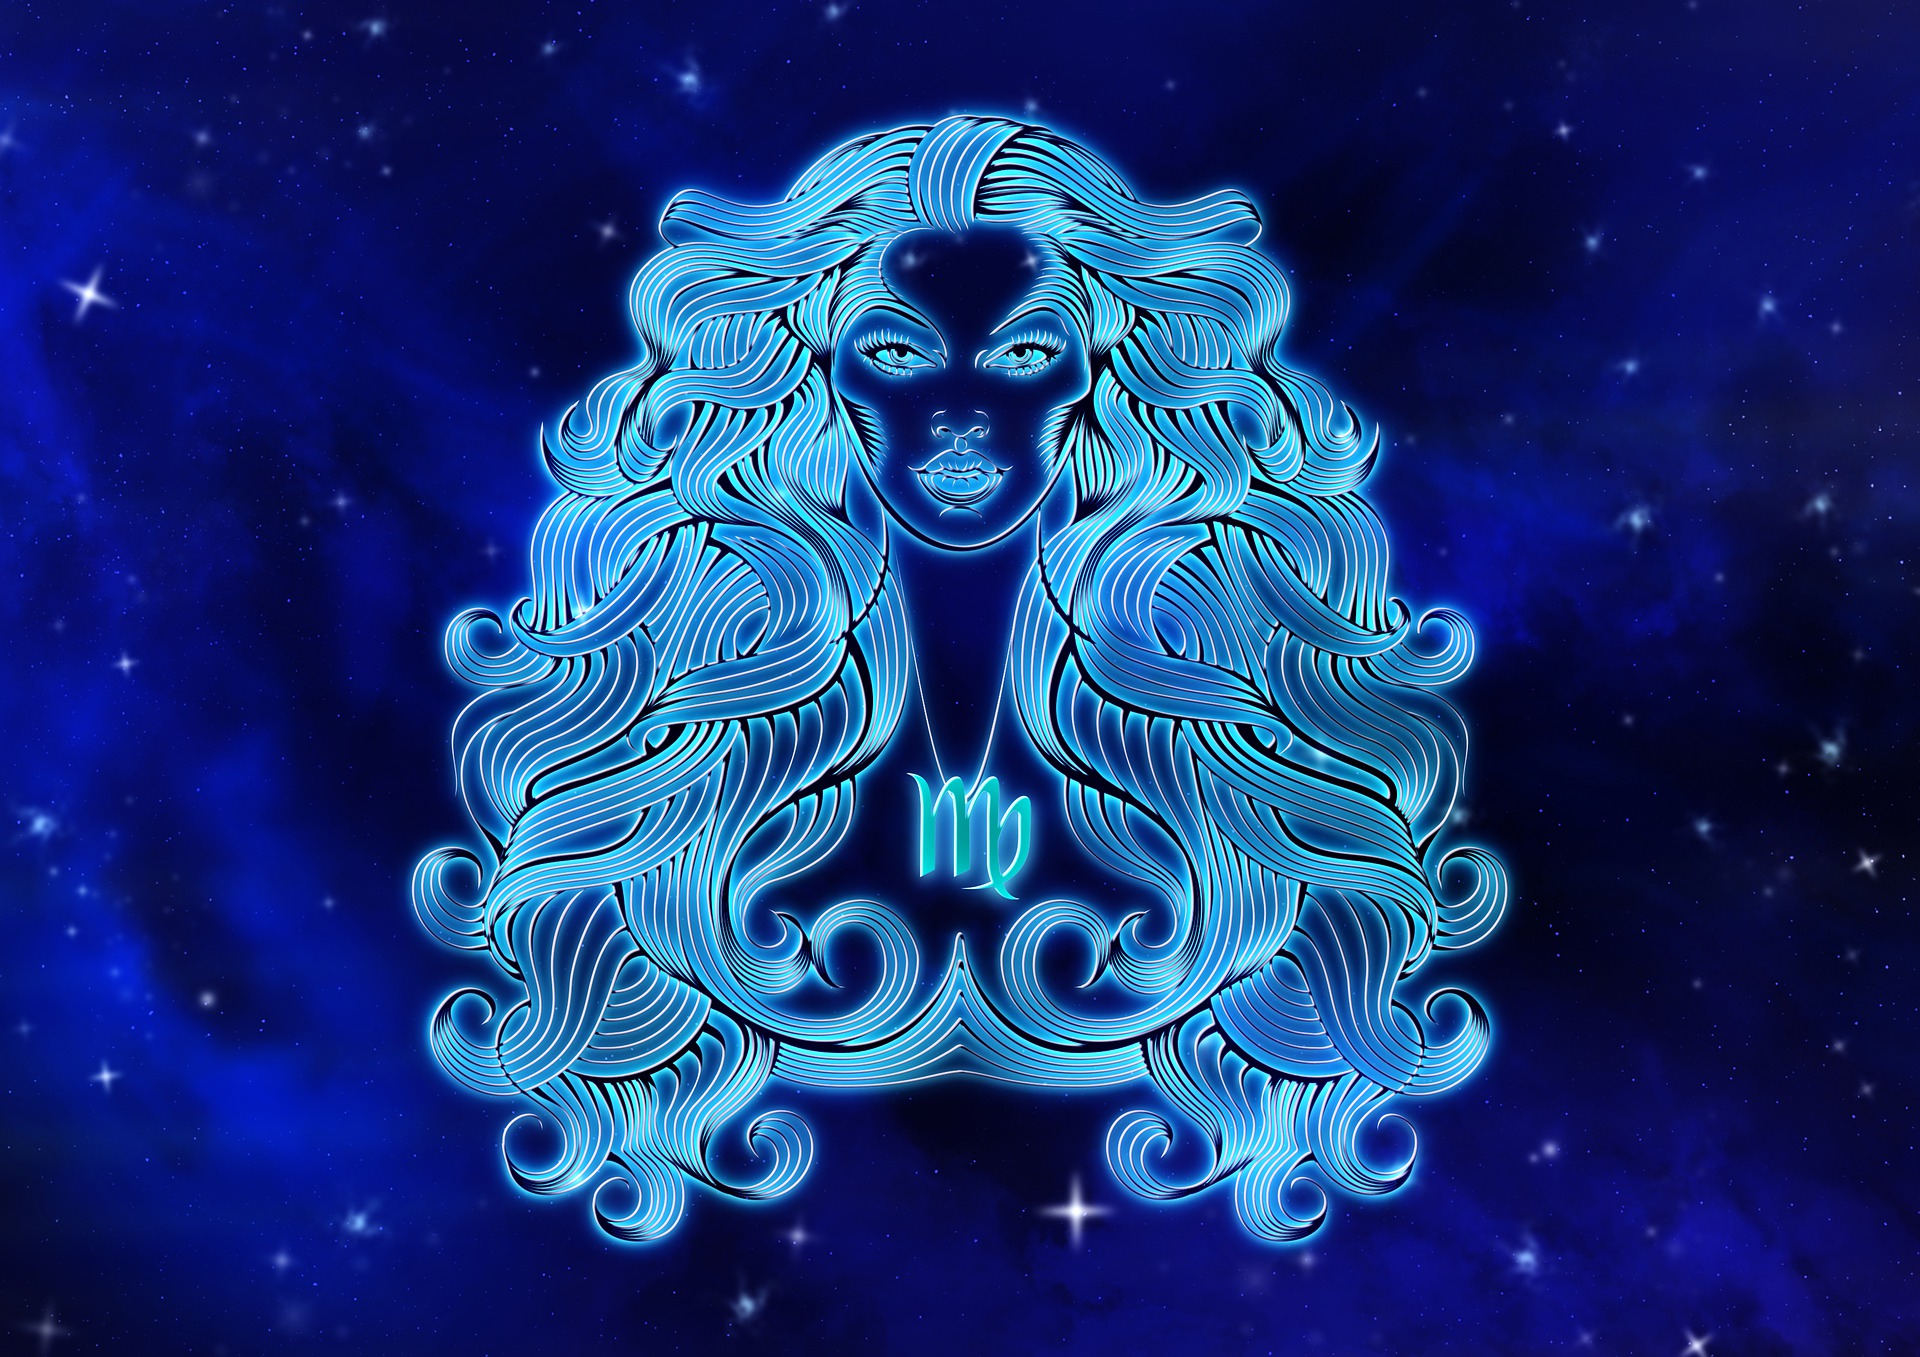 ¿Sabes qué significa el símbolo de tu signo zodiacal? La